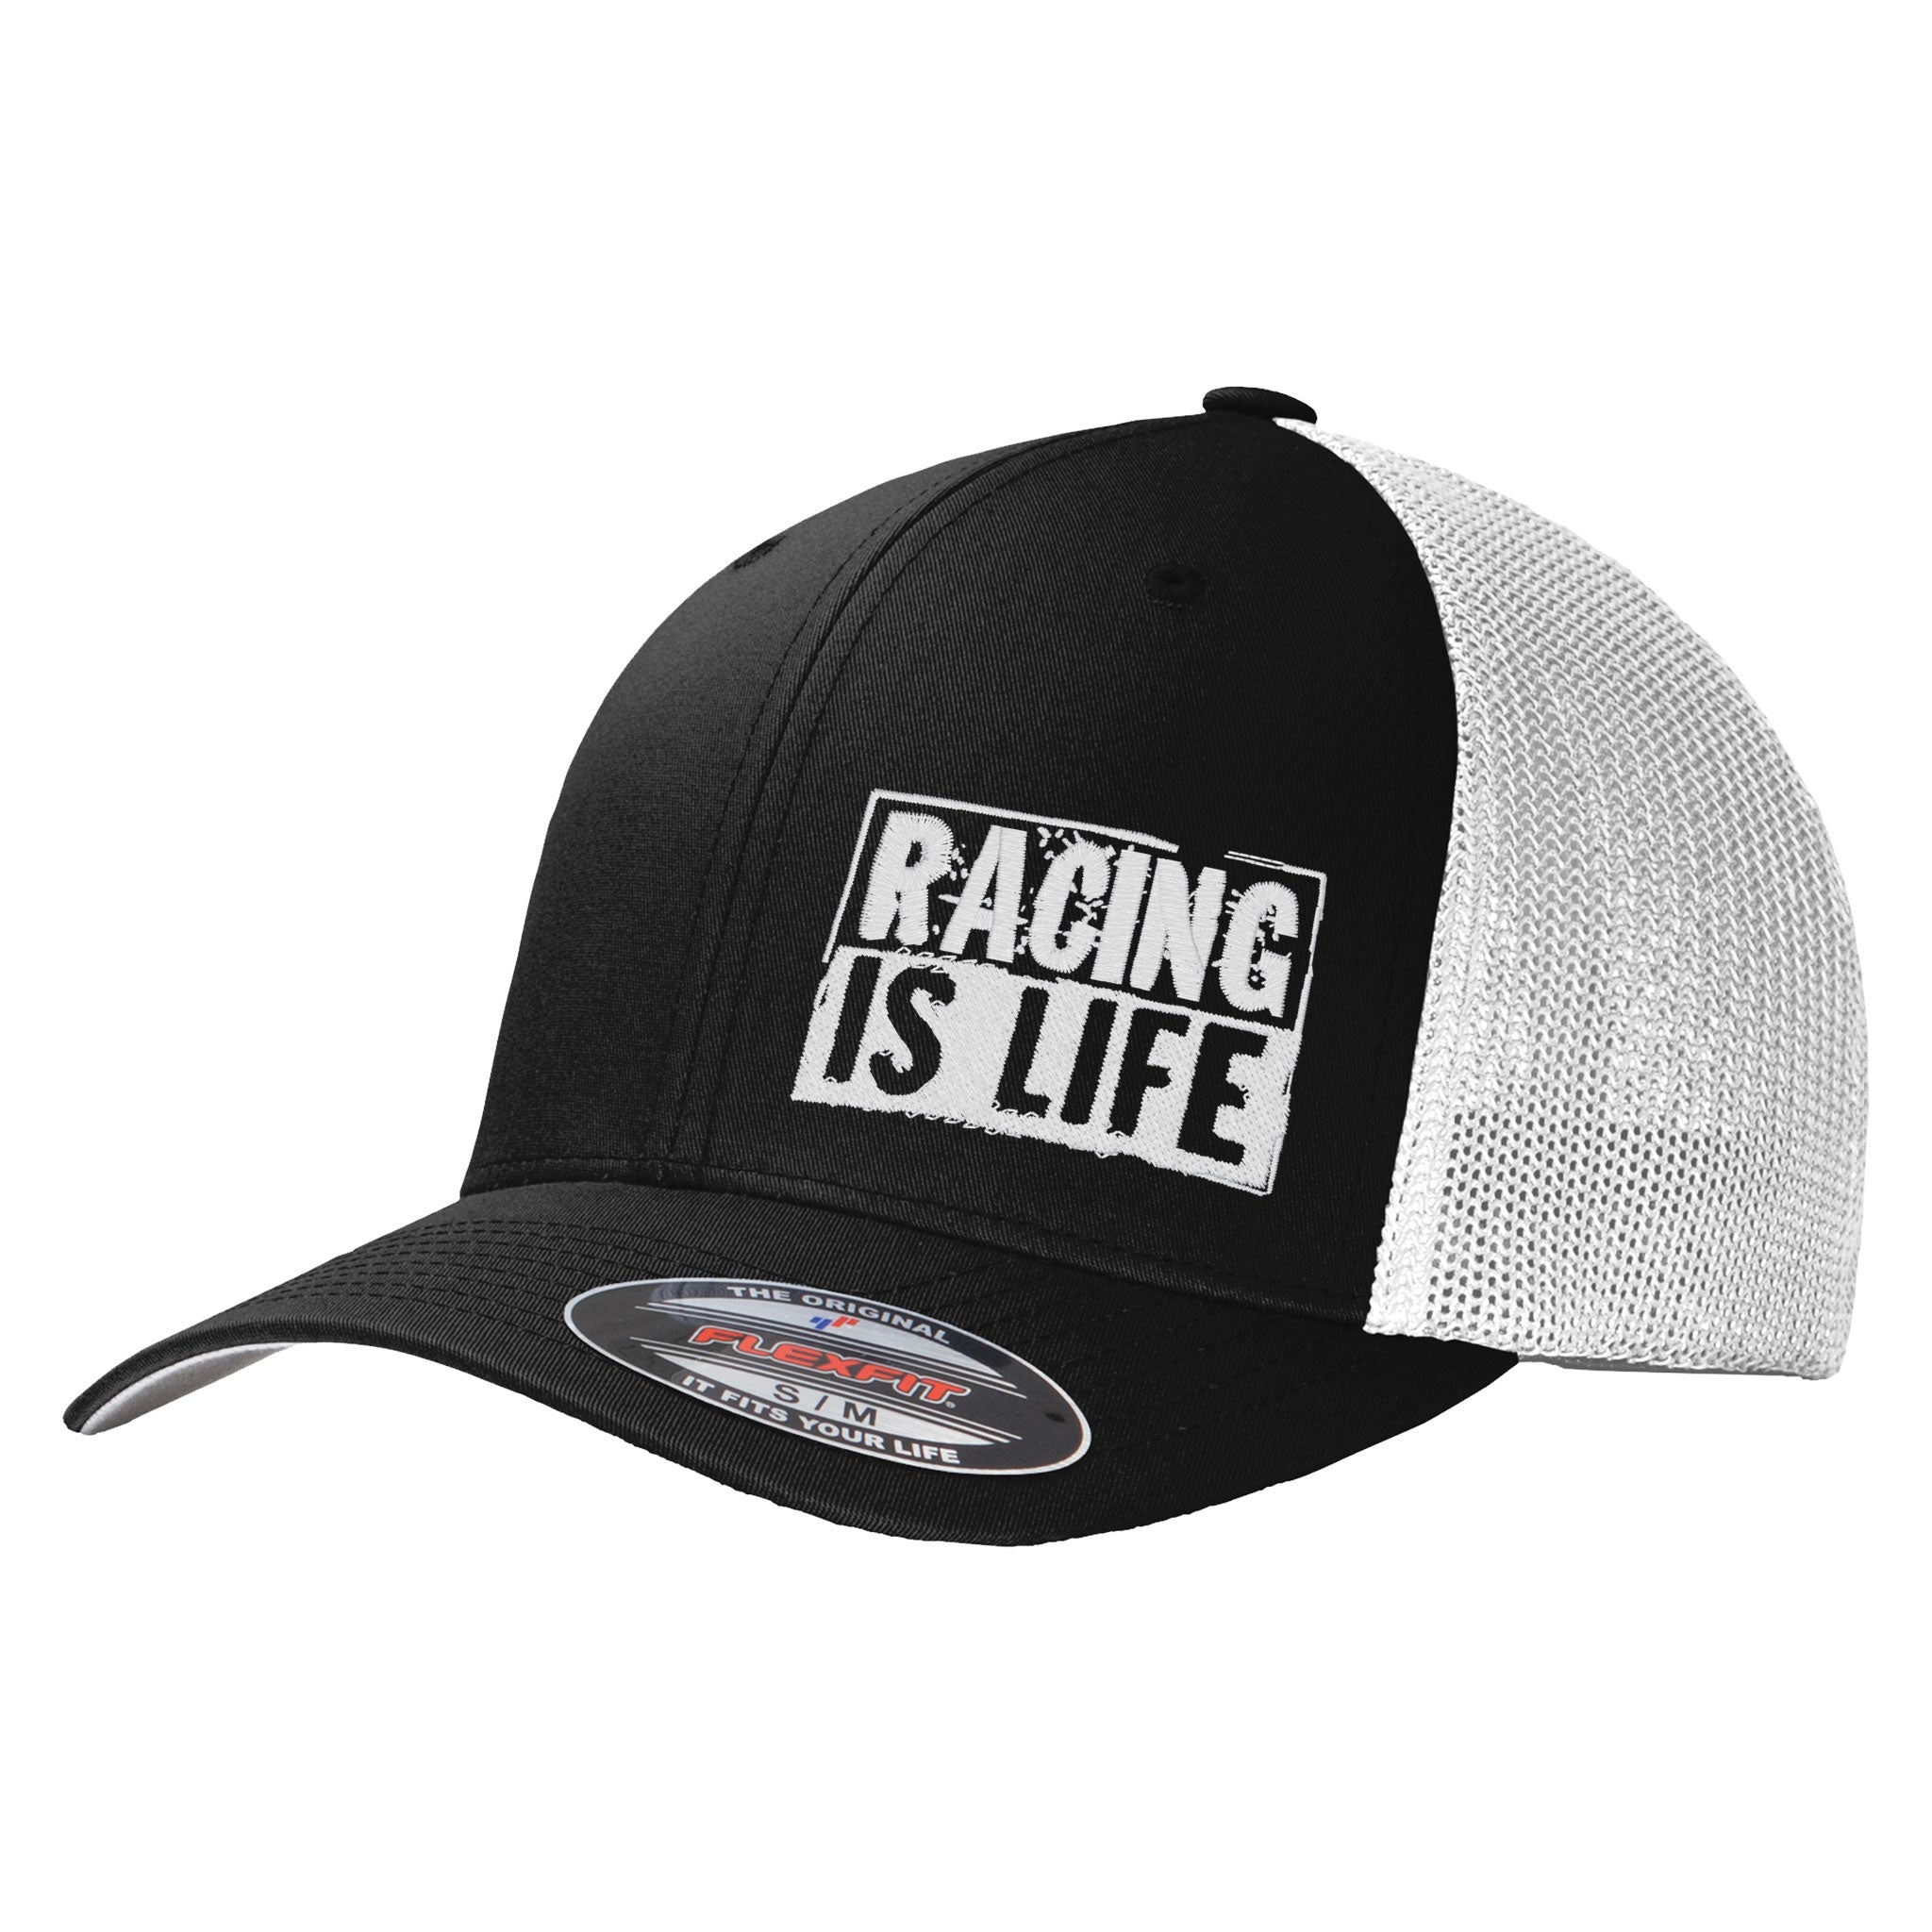 Racing Is Life Flexfit Trucker Hat